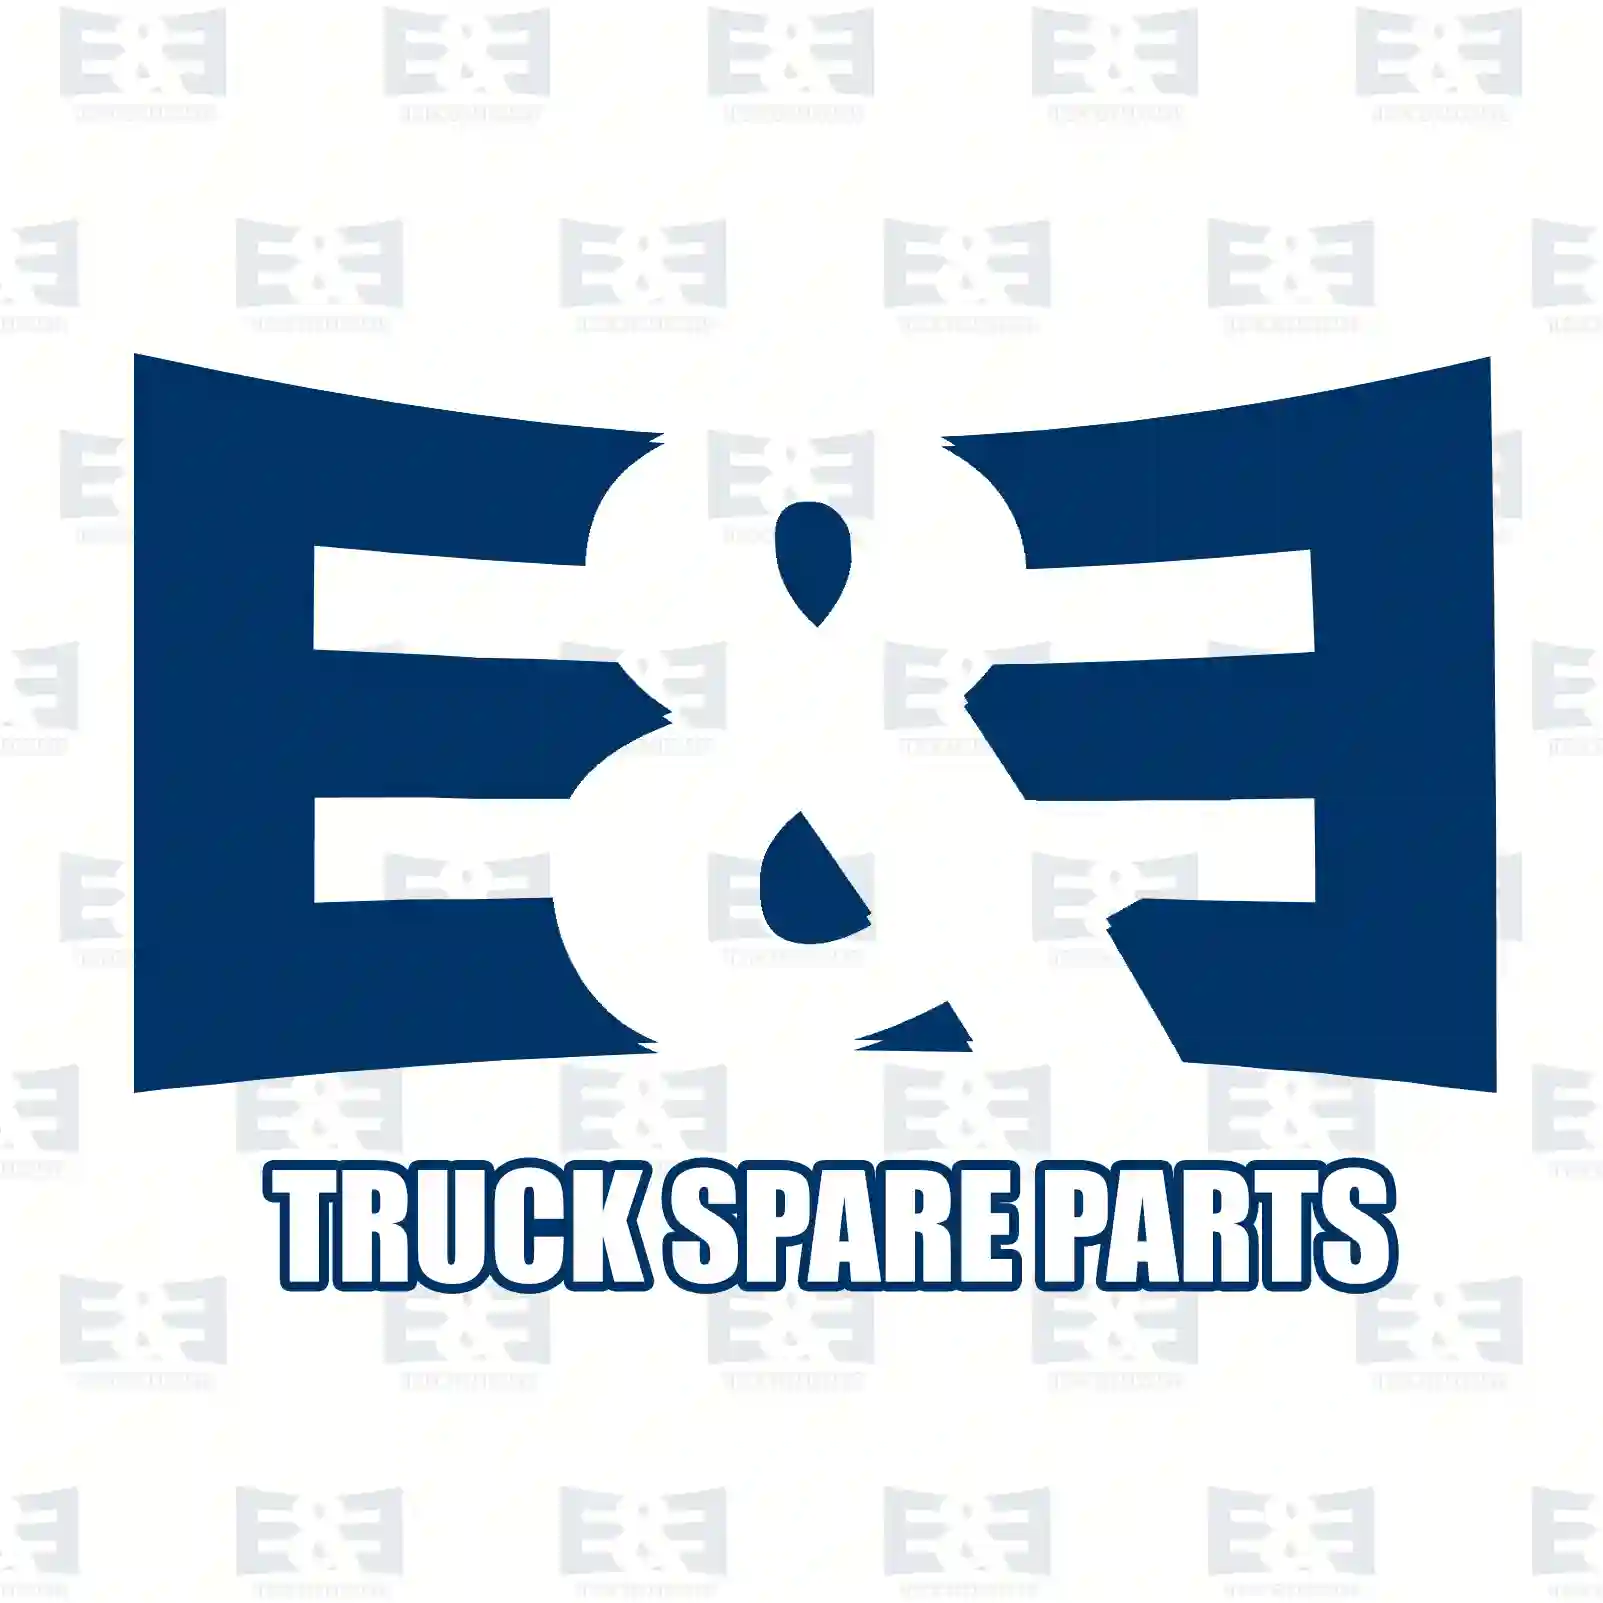 Step well case, right, 2E2289014, 5010578876, 20593734, ZG61215-0008 ||  2E2289014 E&E Truck Spare Parts | Truck Spare Parts, Auotomotive Spare Parts Step well case, right, 2E2289014, 5010578876, 20593734, ZG61215-0008 ||  2E2289014 E&E Truck Spare Parts | Truck Spare Parts, Auotomotive Spare Parts